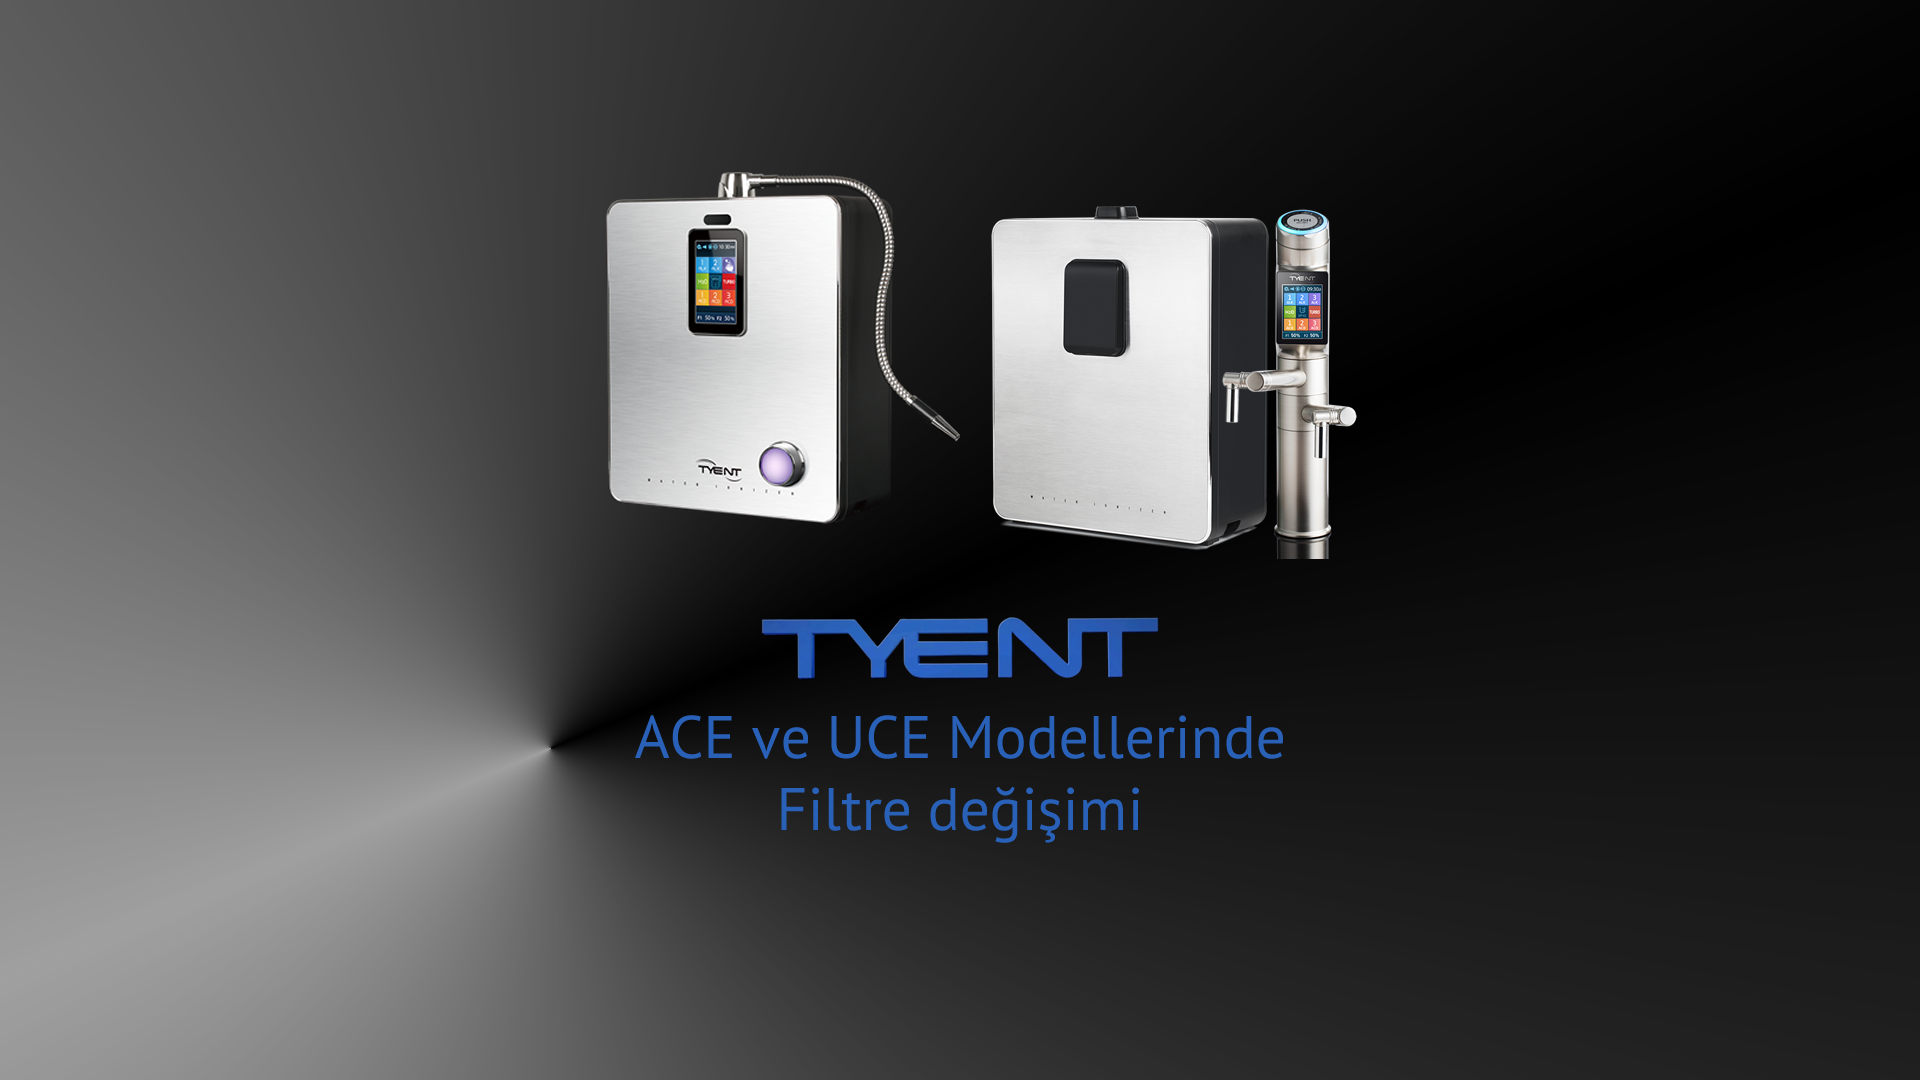 Tyent ACE-UCE Modellerinde Filtre Değişimi